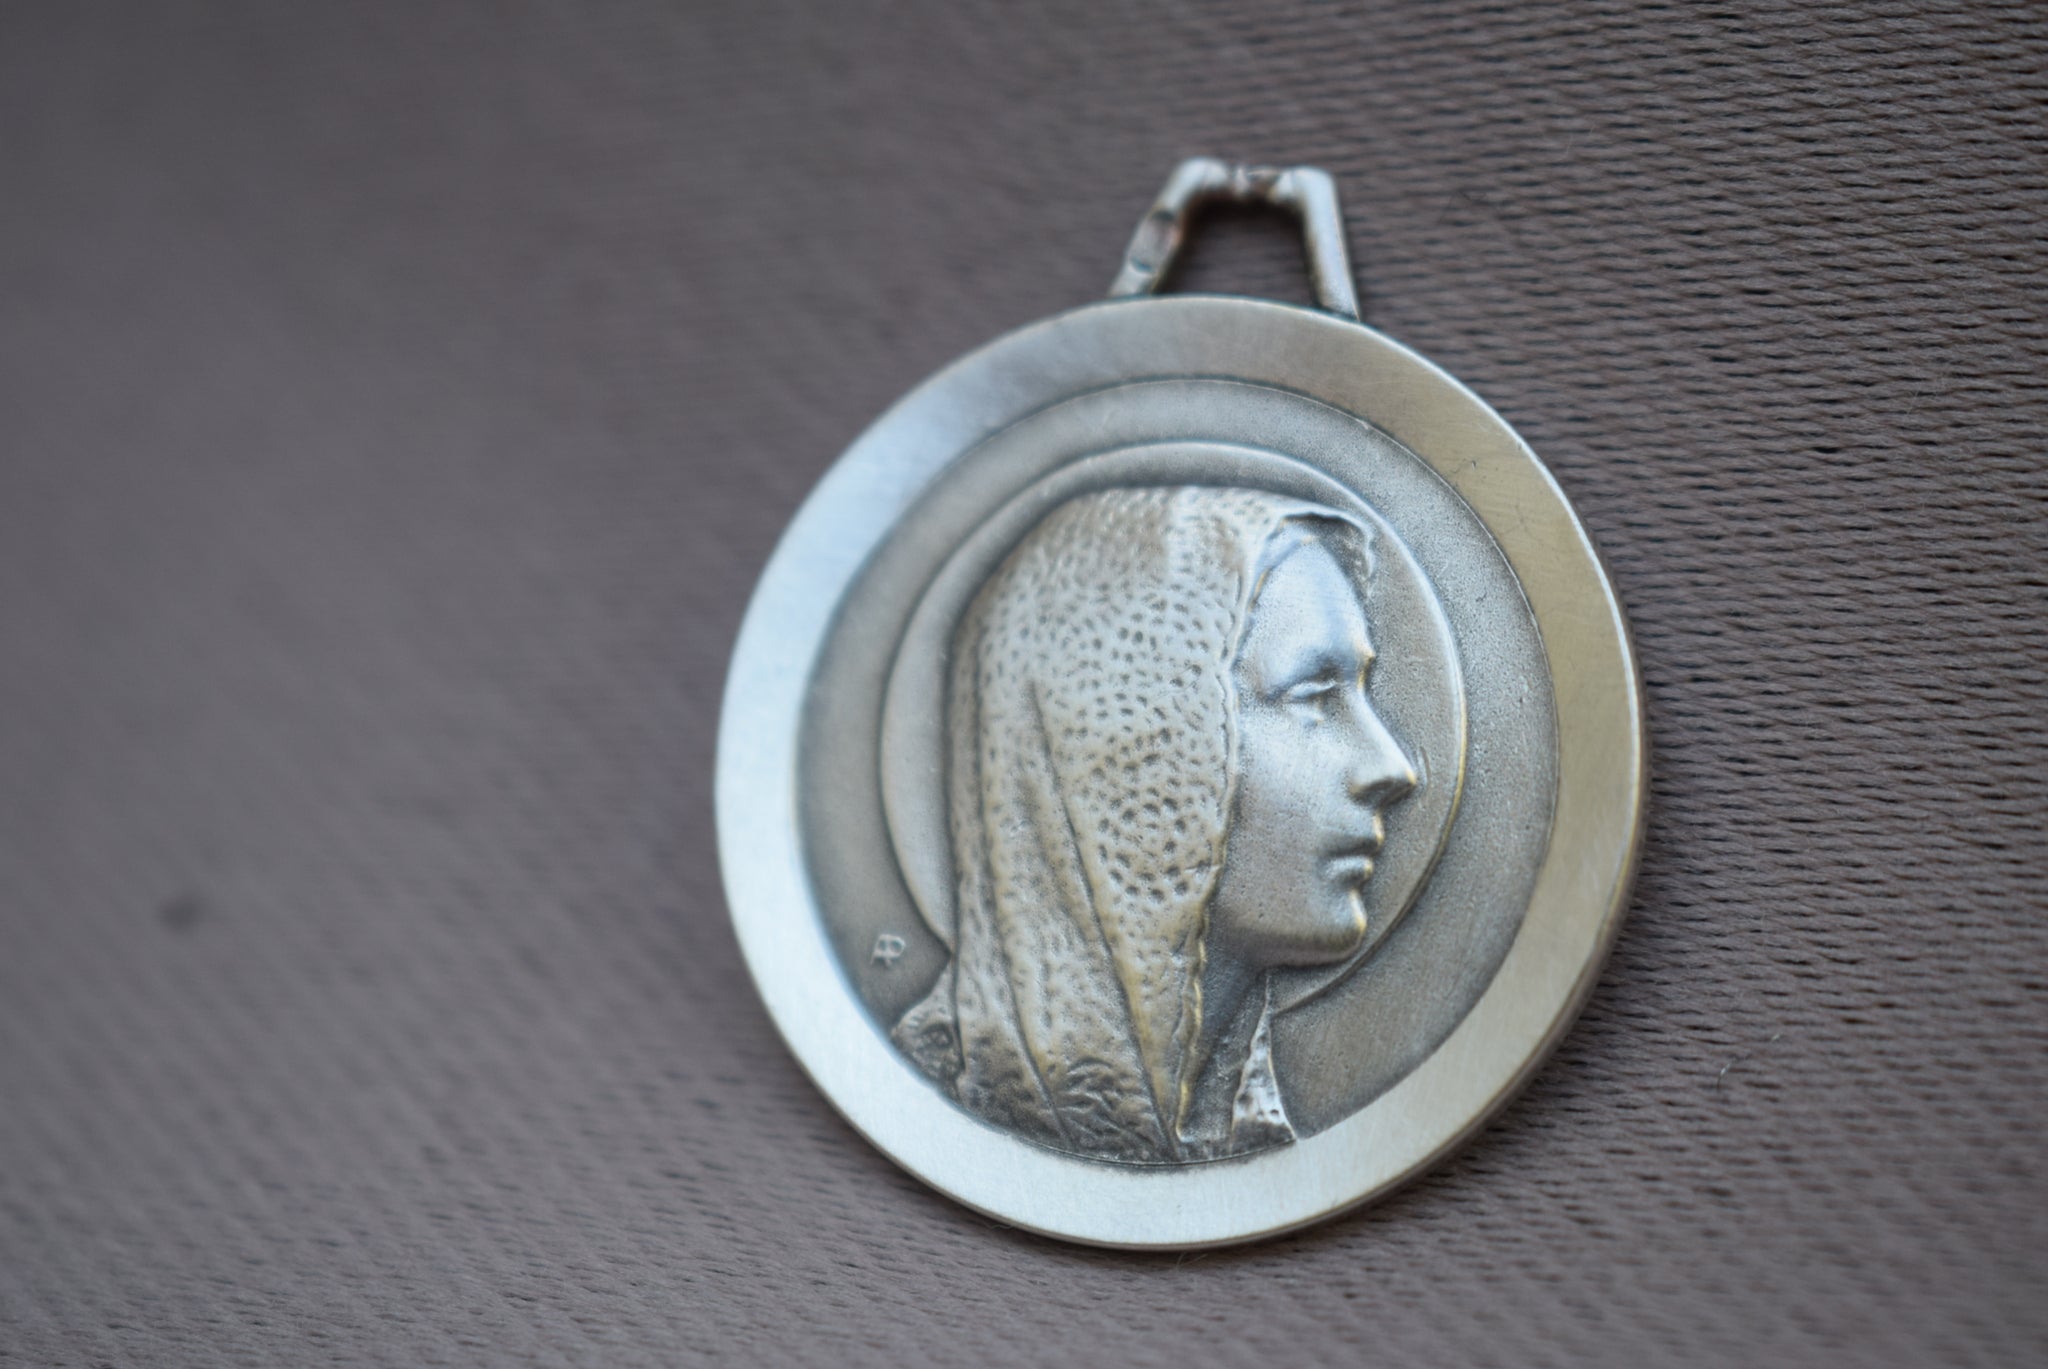 Silver Lourdes Medal - Charmantiques